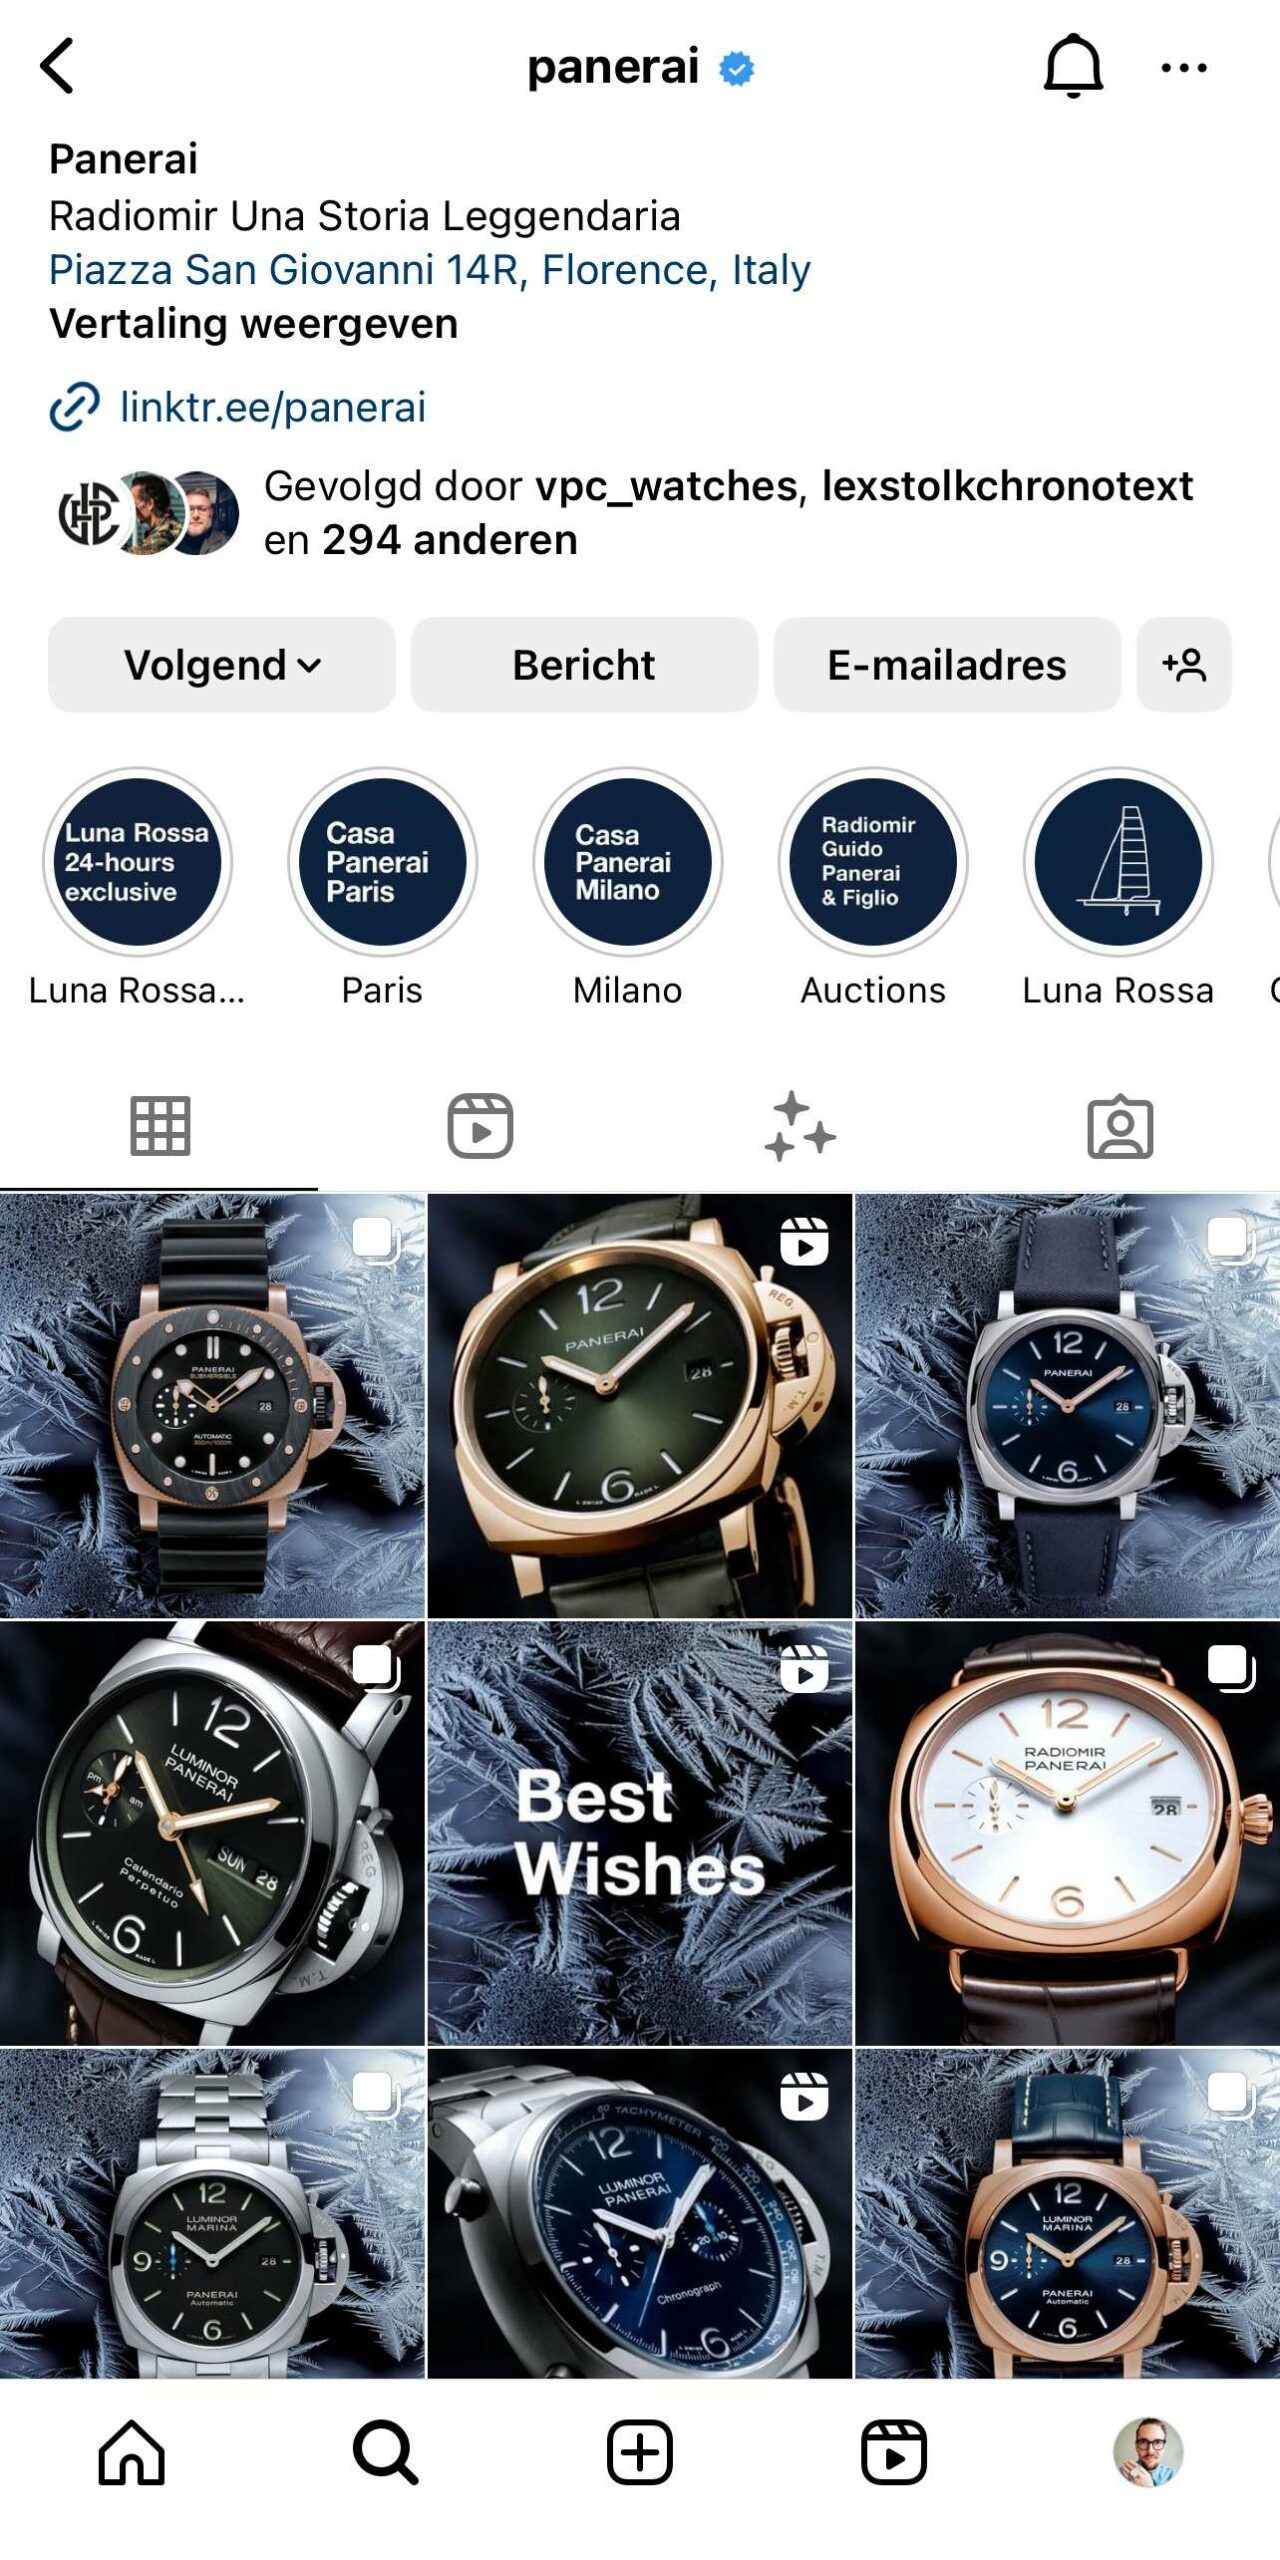 Следите за брендами часов в Instagram - как они к этому относятся?